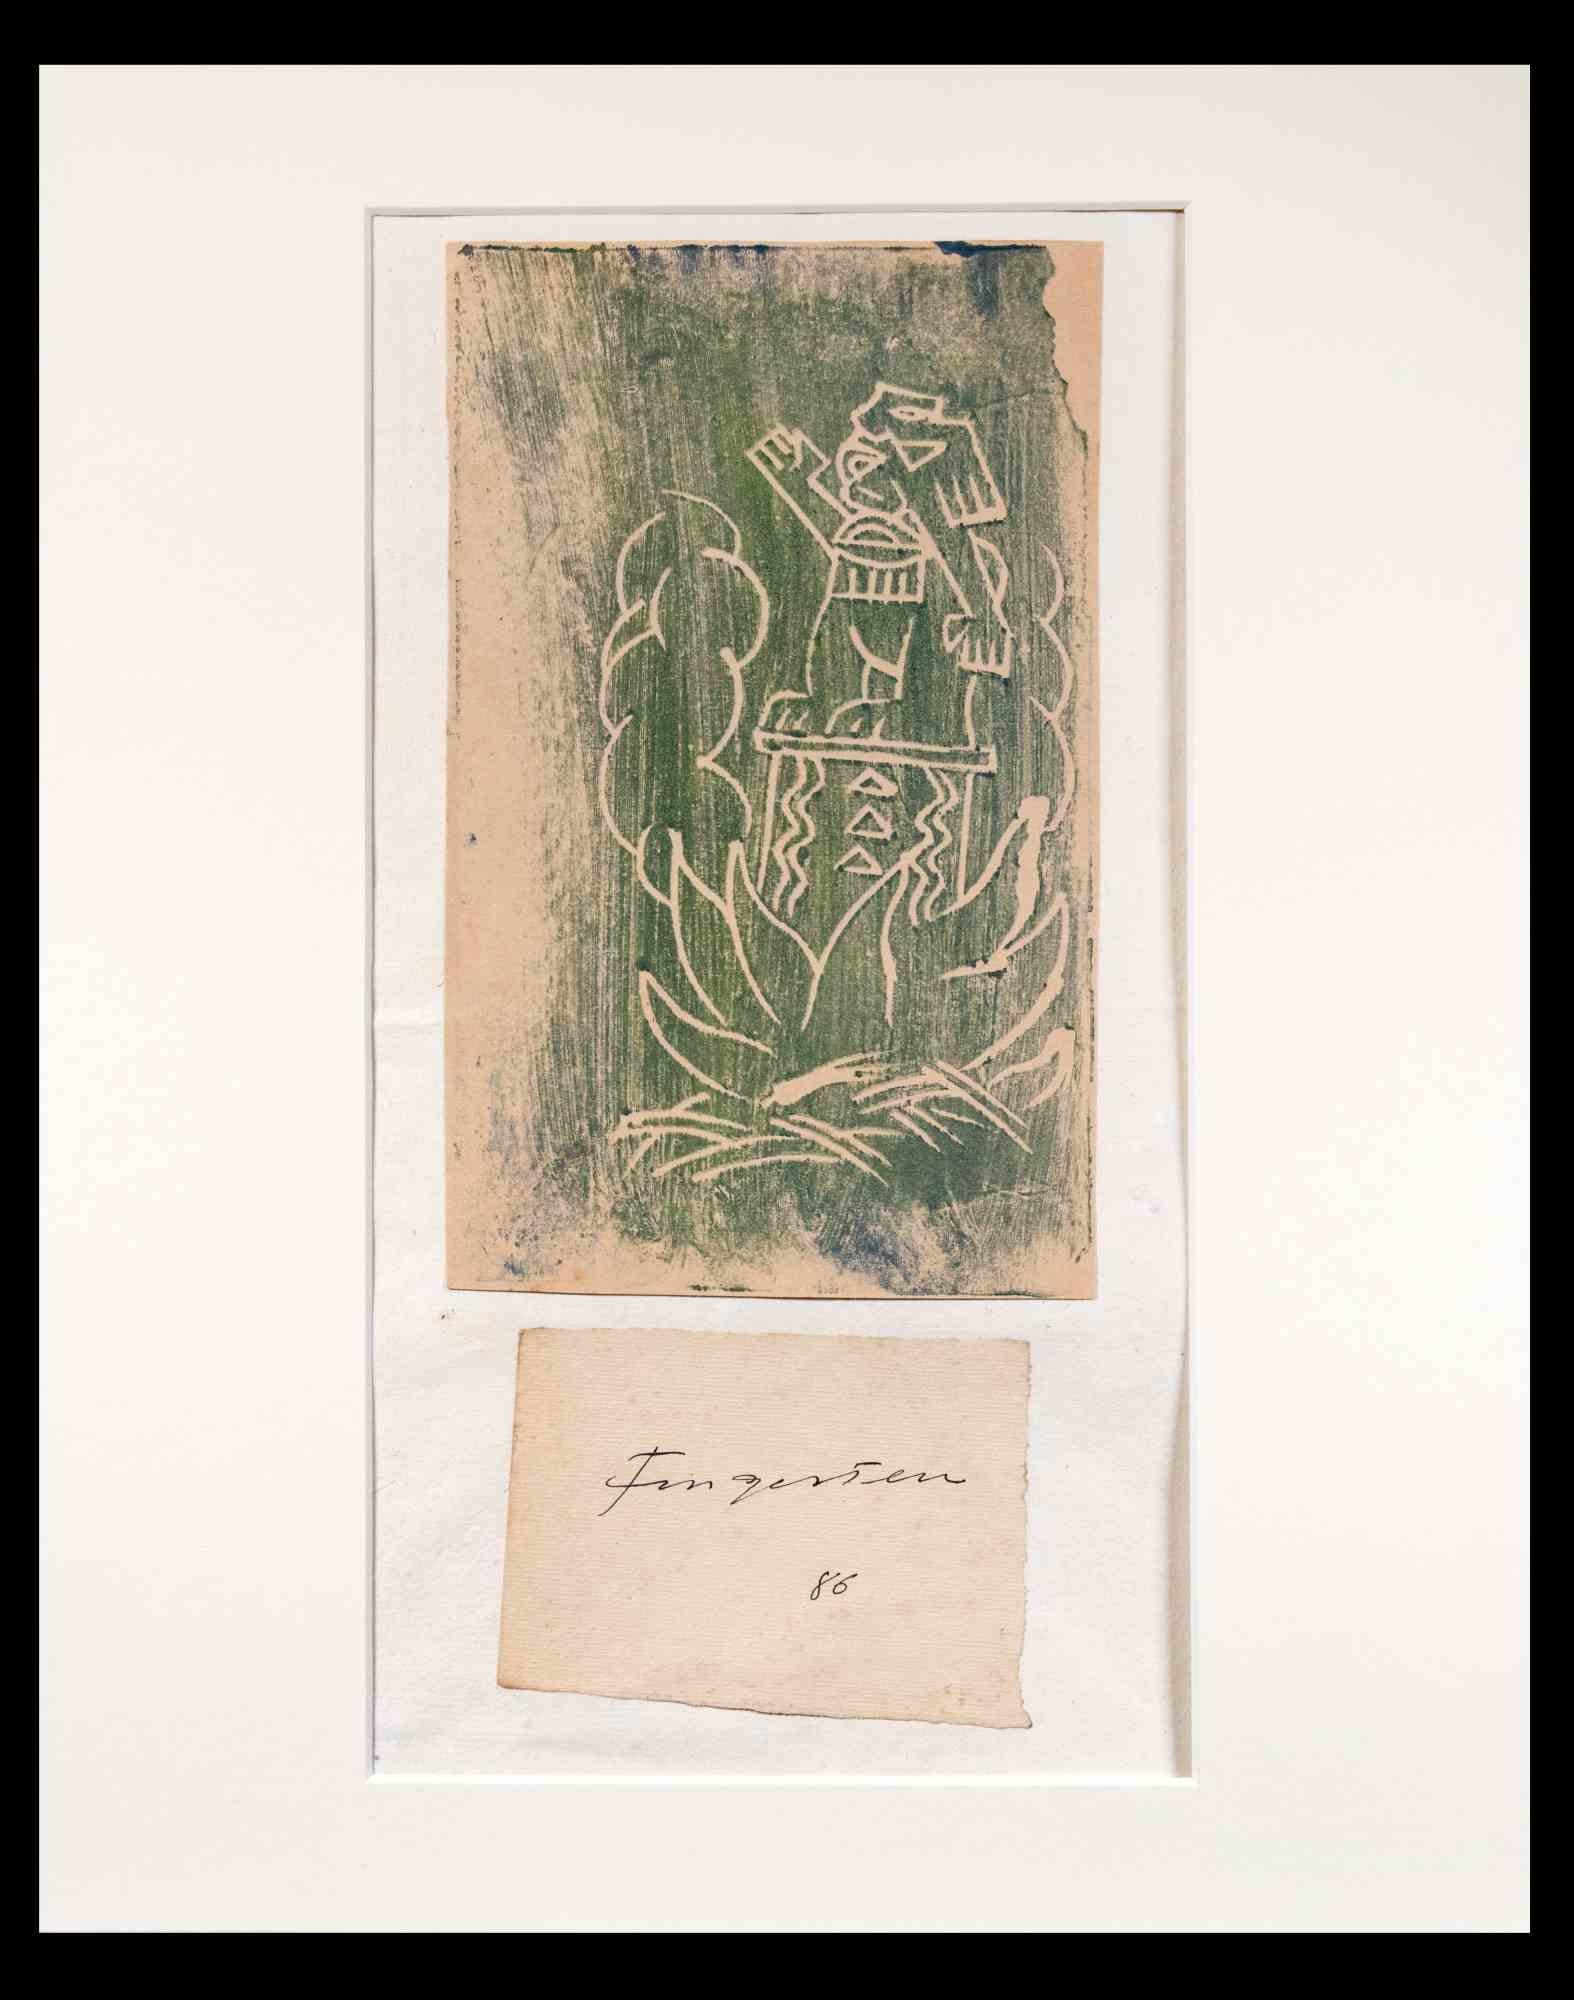 Mann im Topf  ist ein Holzschnitt von Michel Fingesten aus den 1930er Jahren. 

Über dem Holzschnitt, der einen Mann mit erhobener Hand und Feuer darstellt, darunter eine Karte mit der Signatur des Stechers und der Nummer 86. 

30x24 cm ; es enthält